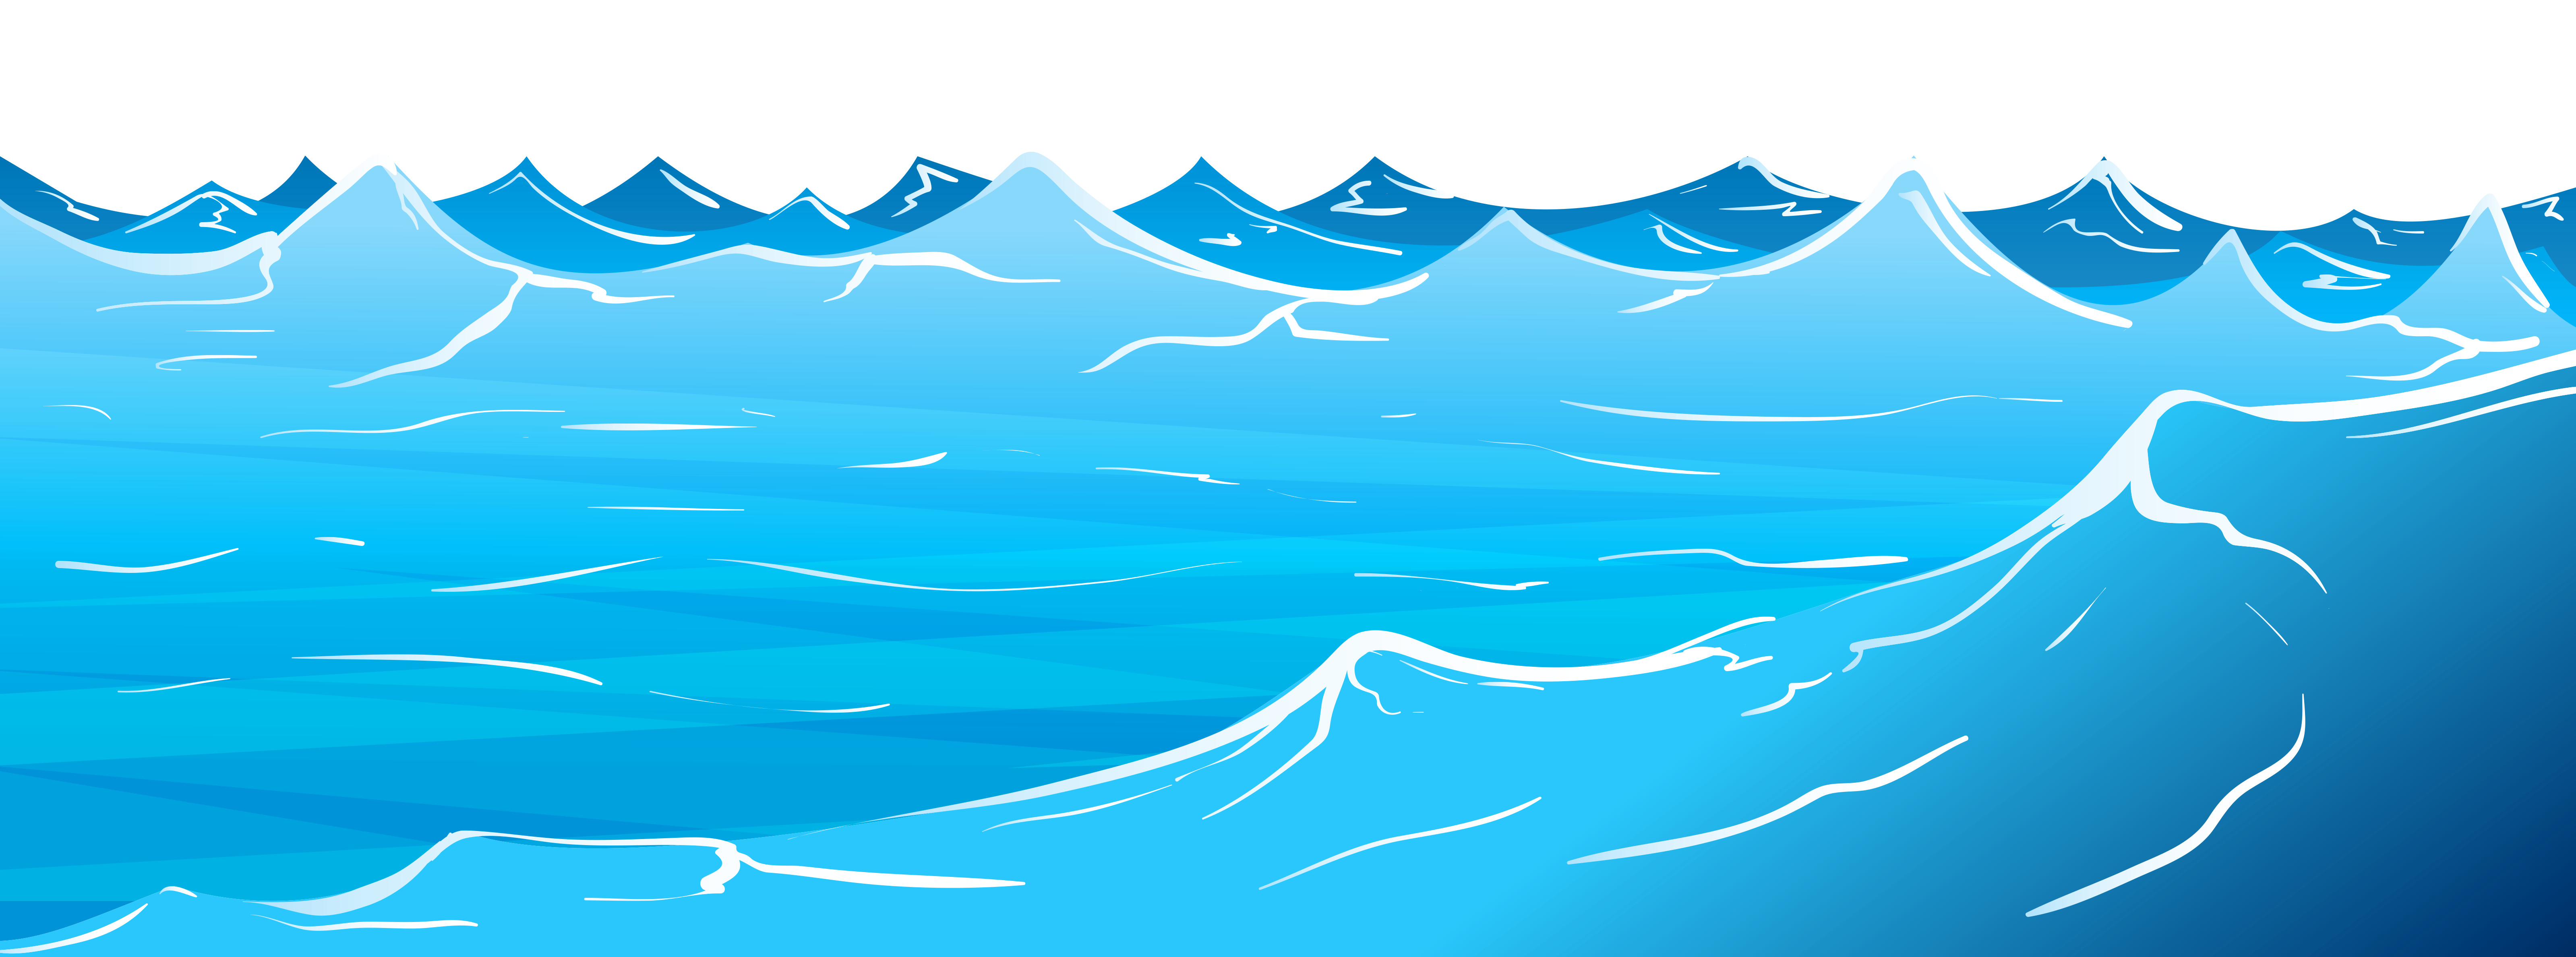 Ocean Waves Border Waves Of B